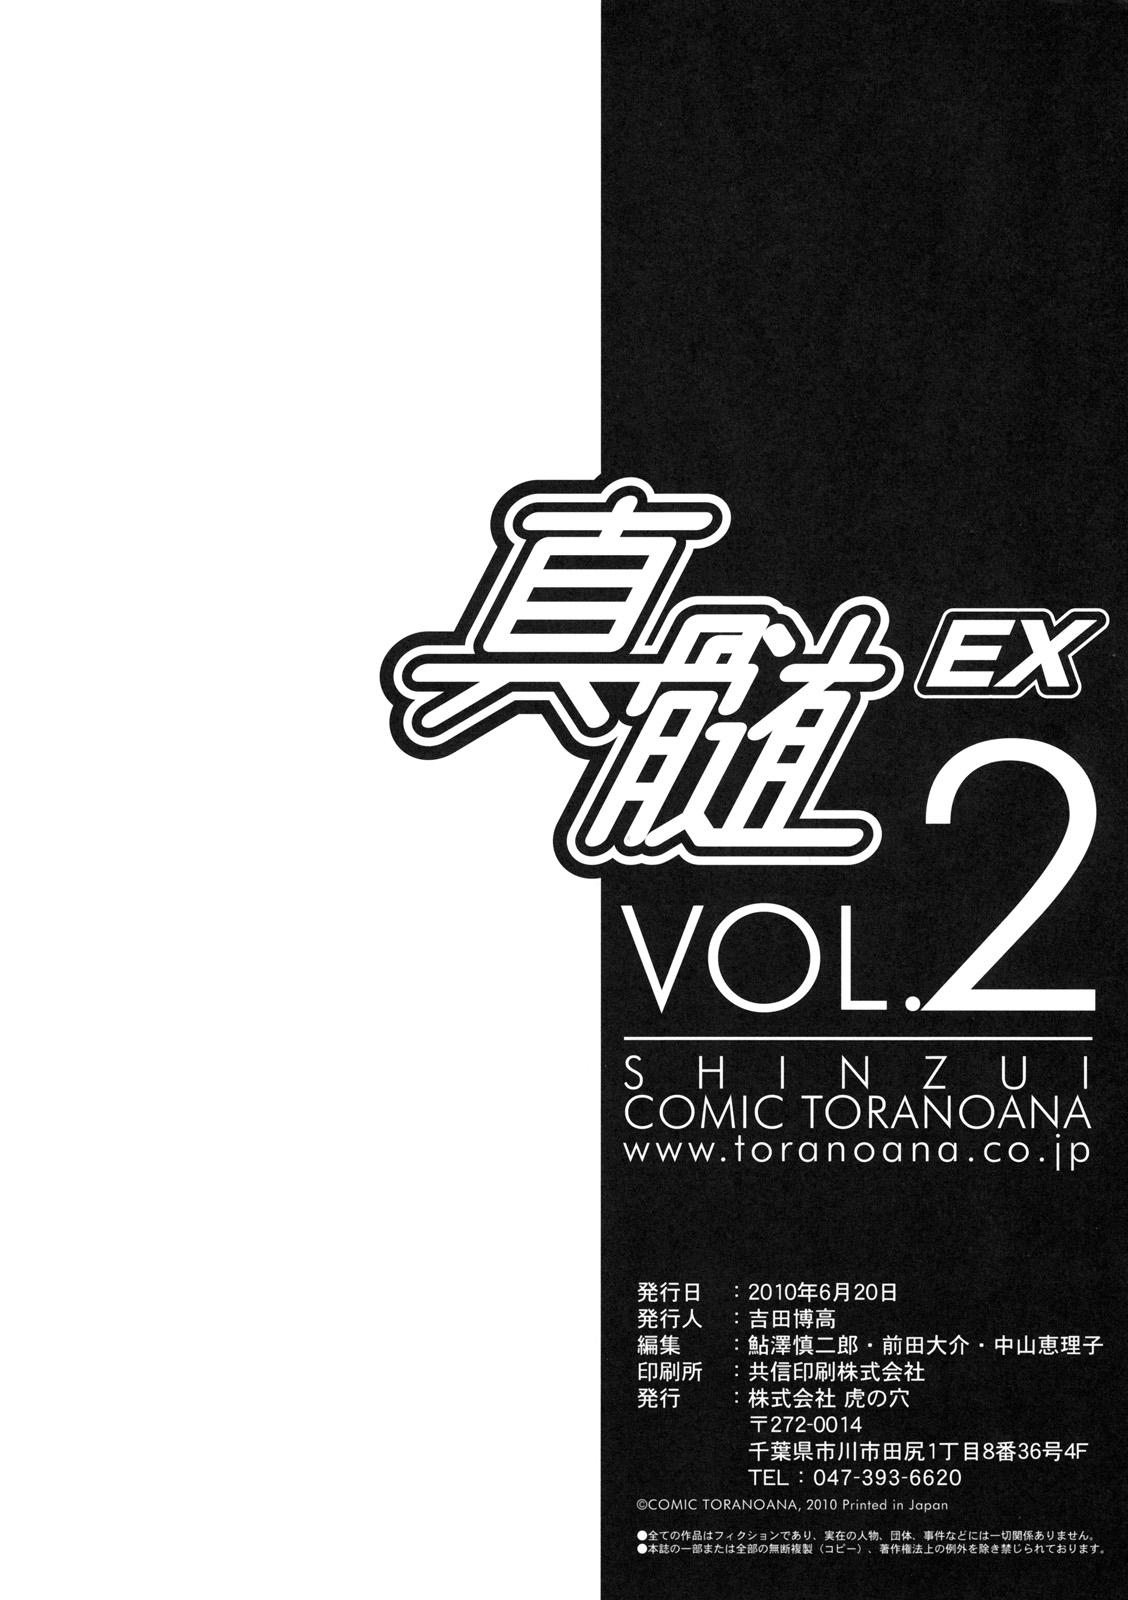 Vergon Shinzui EX Vol. 2 Tall - Page 101